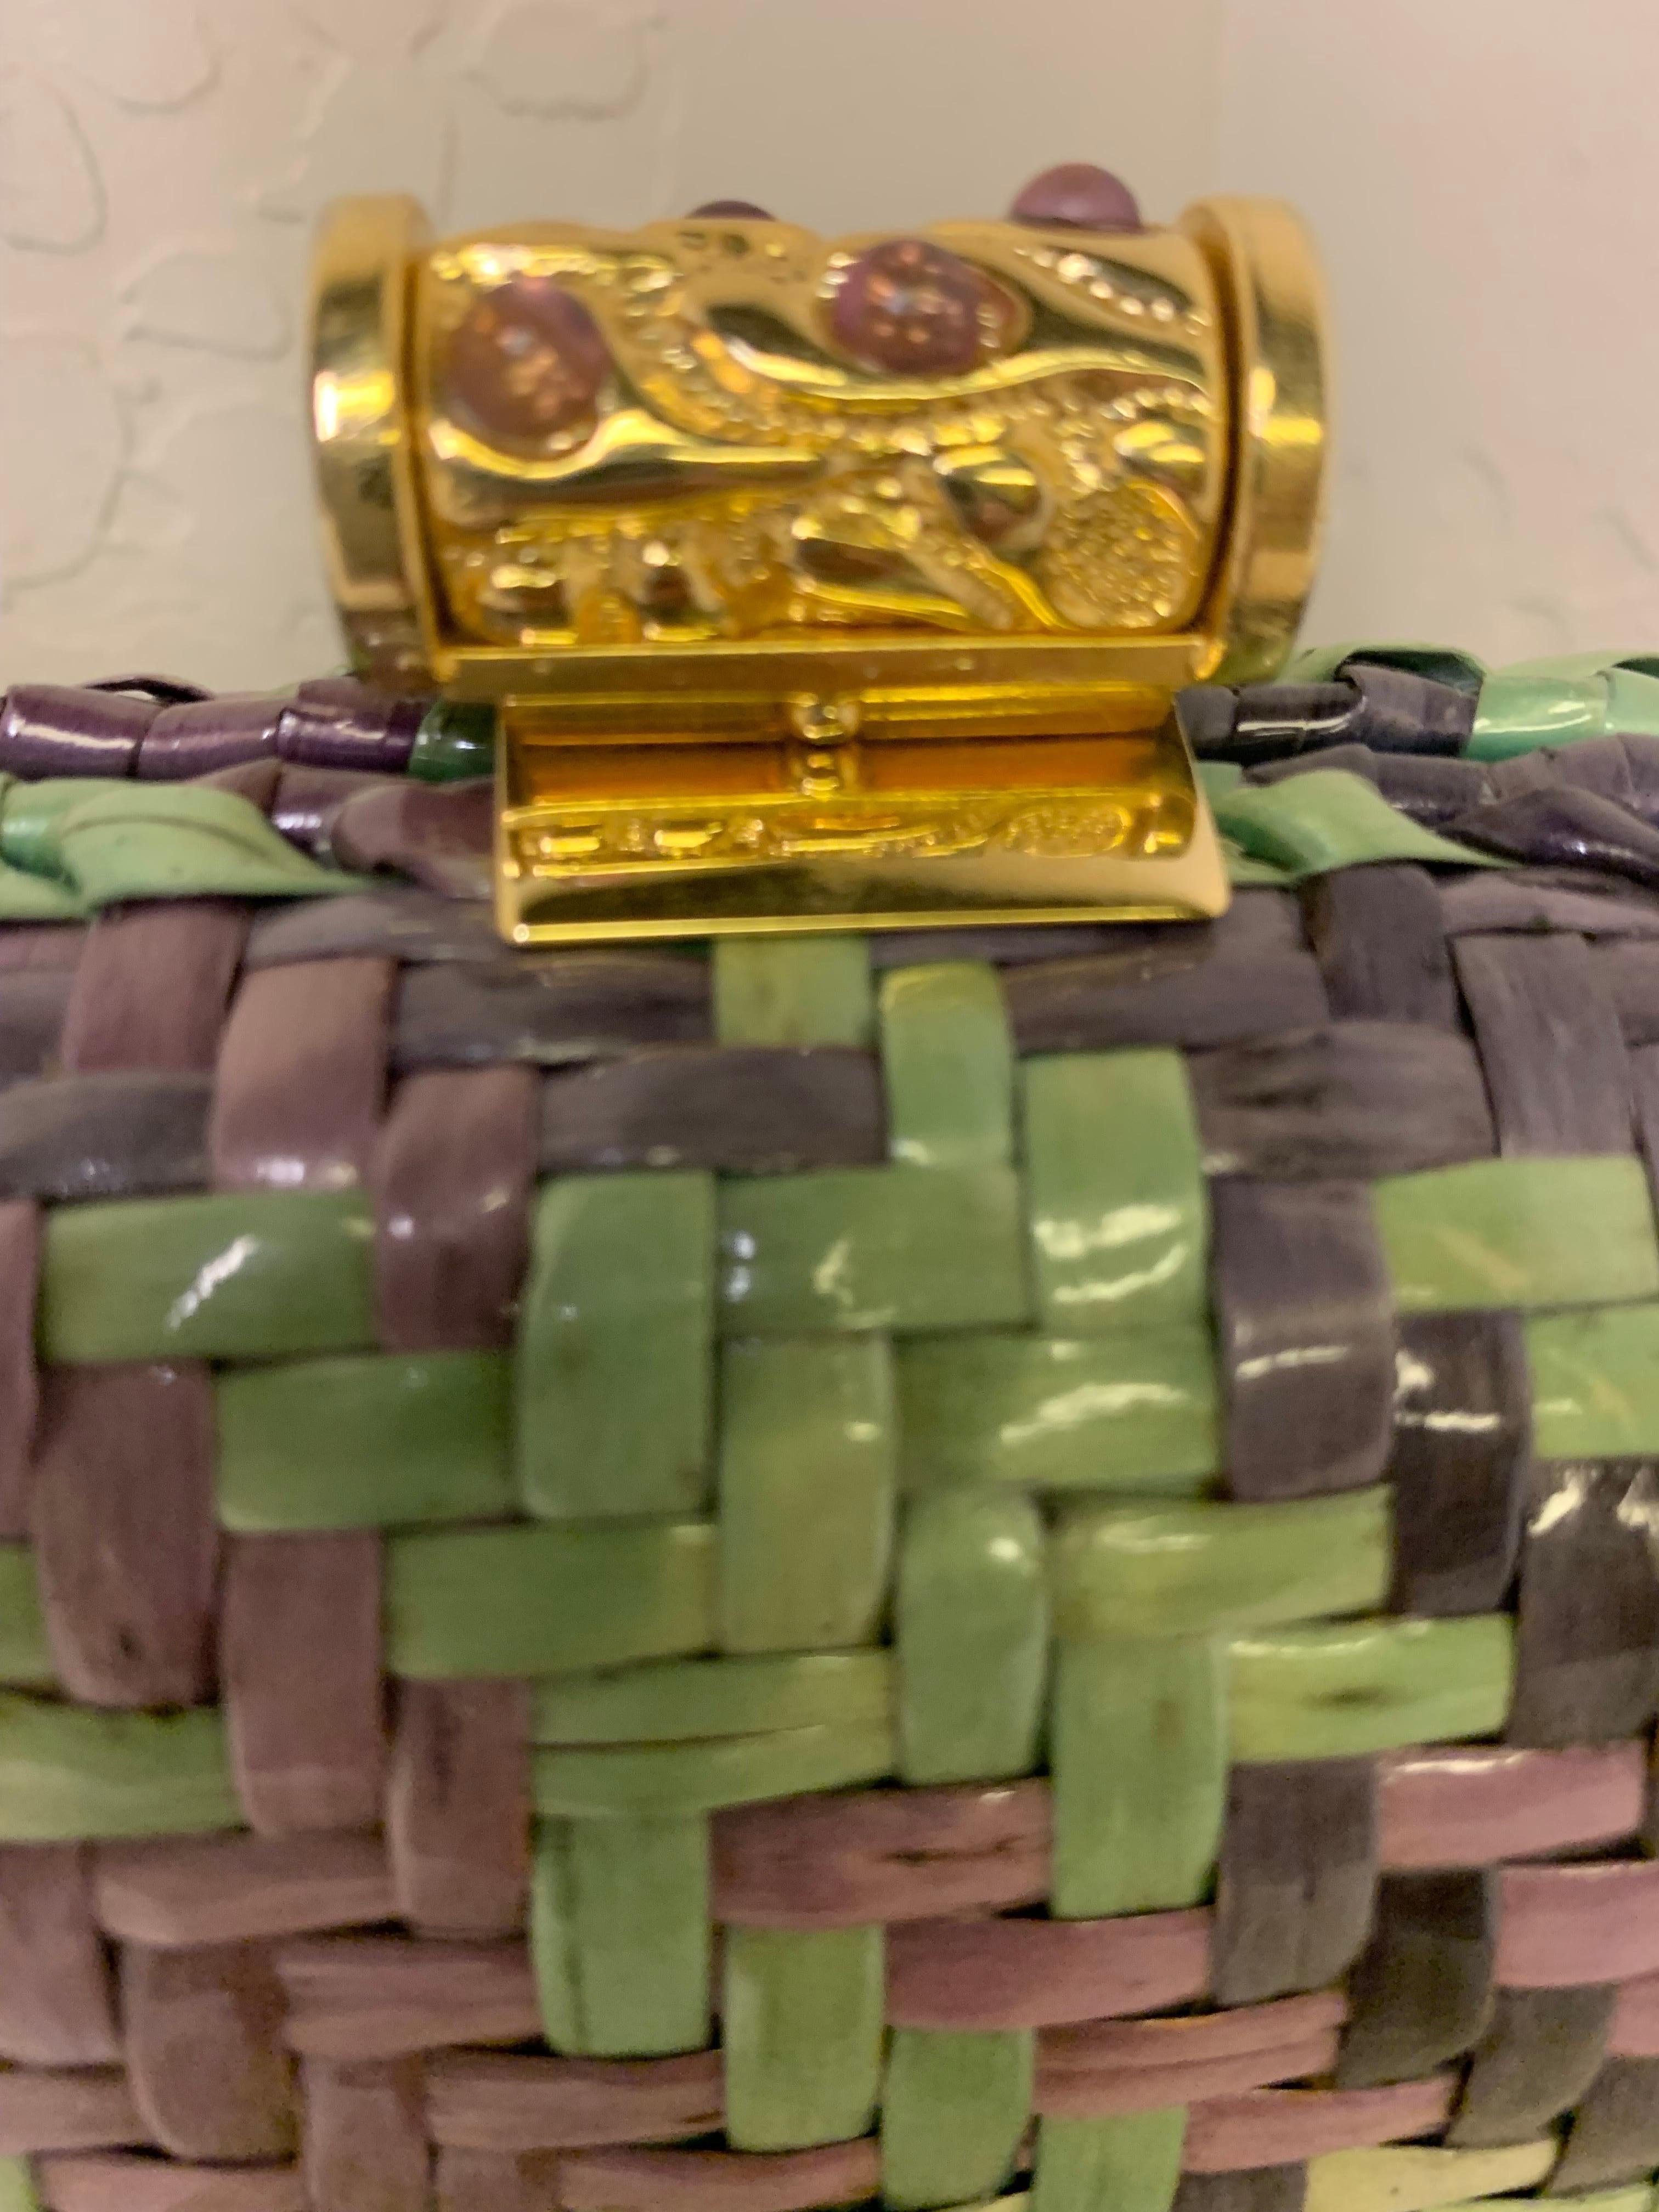 Un élégant sac à main Rodo des années 1980 convertible en bandoulière / pochette dans un motif tissé écossais inhabituel de lavande, violet, vert menthe et pistache ! Bandoulière en chaîne et fermoir en métal doré pouvant se transformer en pochette.